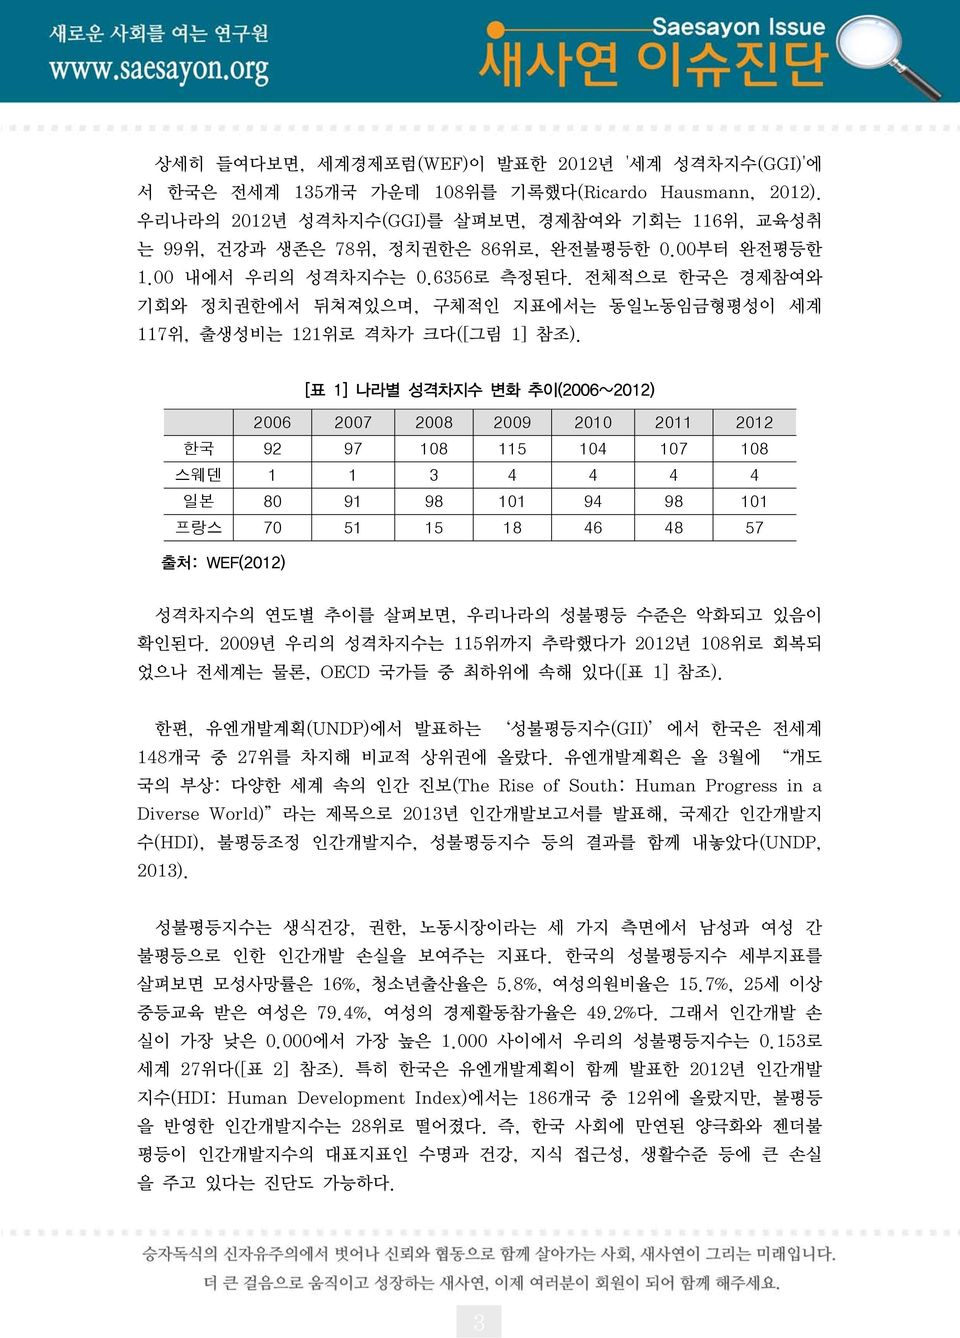 전체적으로 한국은 경제참여와 기회와 정치권한에서 뒤쳐져있으며, 구체적인 지표에서는 동일노동임금형평성이 세계 117 위, 출생성비는 121 위로 격차가 크다([ 그림 1] 참조).